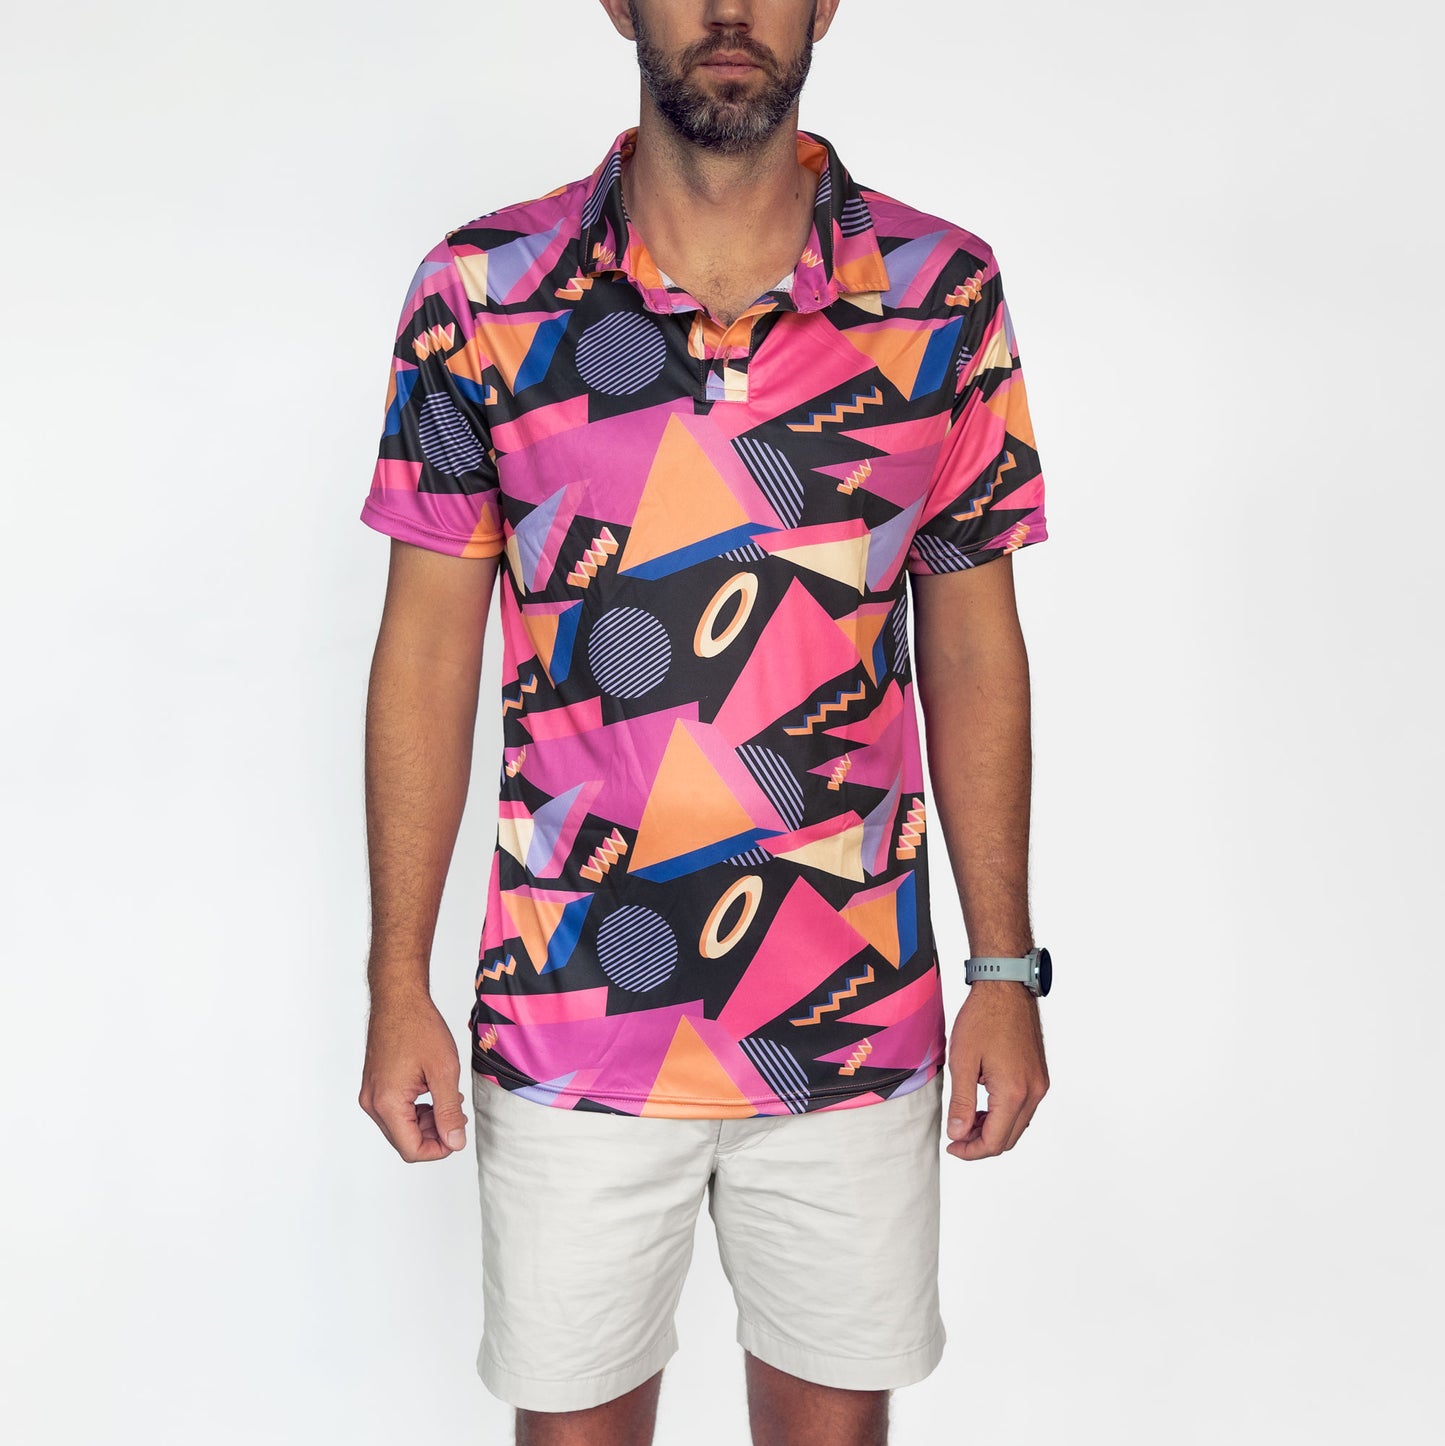 Retro Electro Men's Golf Shirt